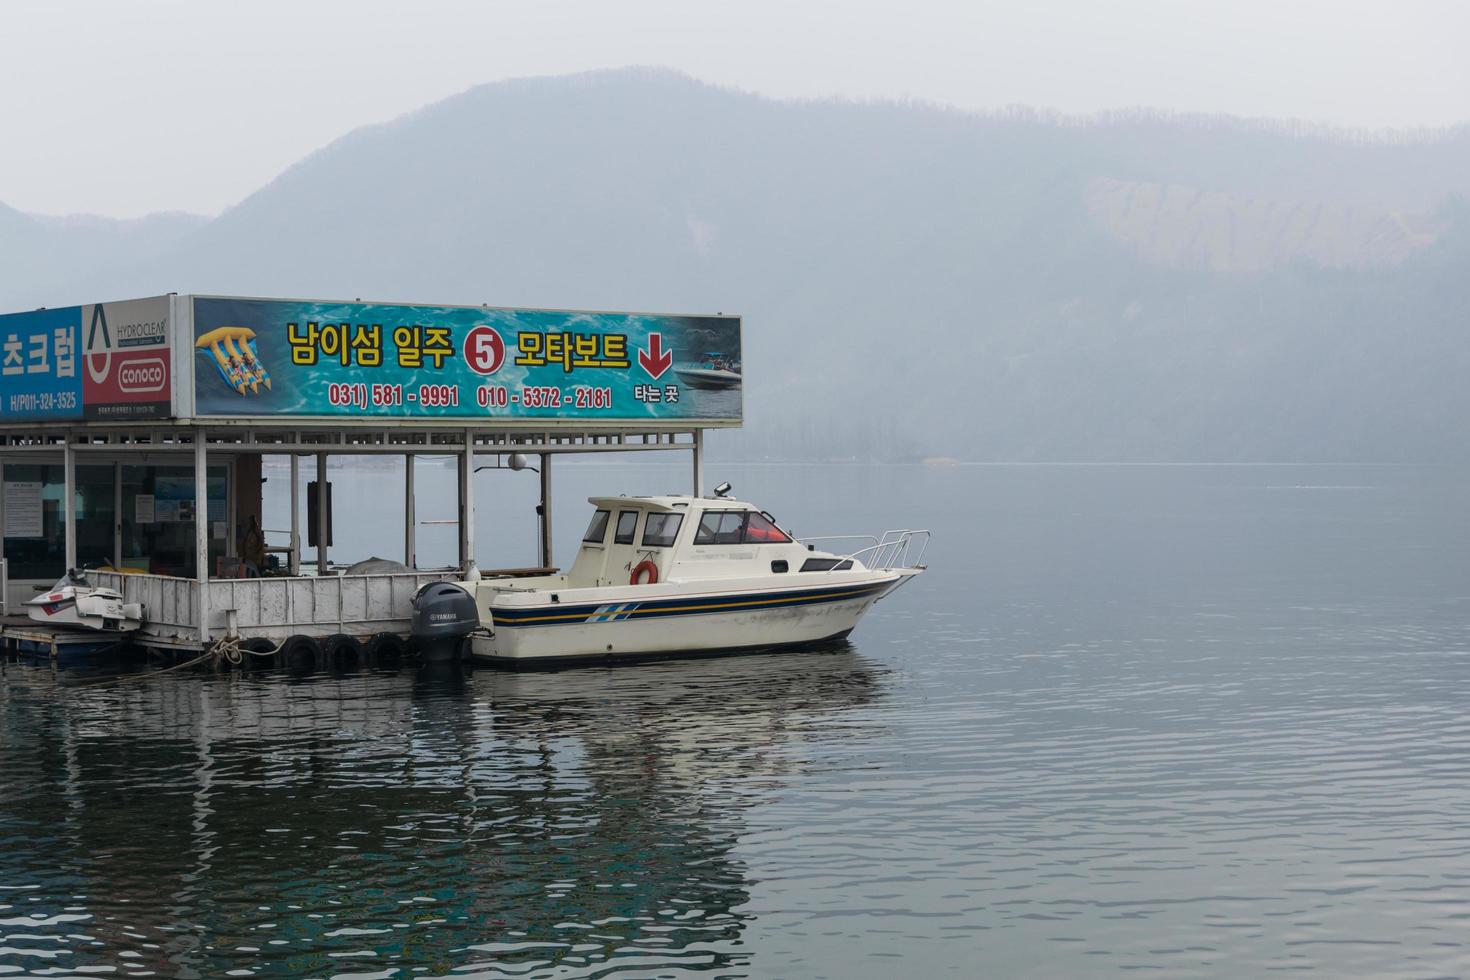 gangwon-do, korea 2016 - passagerarfartyg för turister över hela ön foto